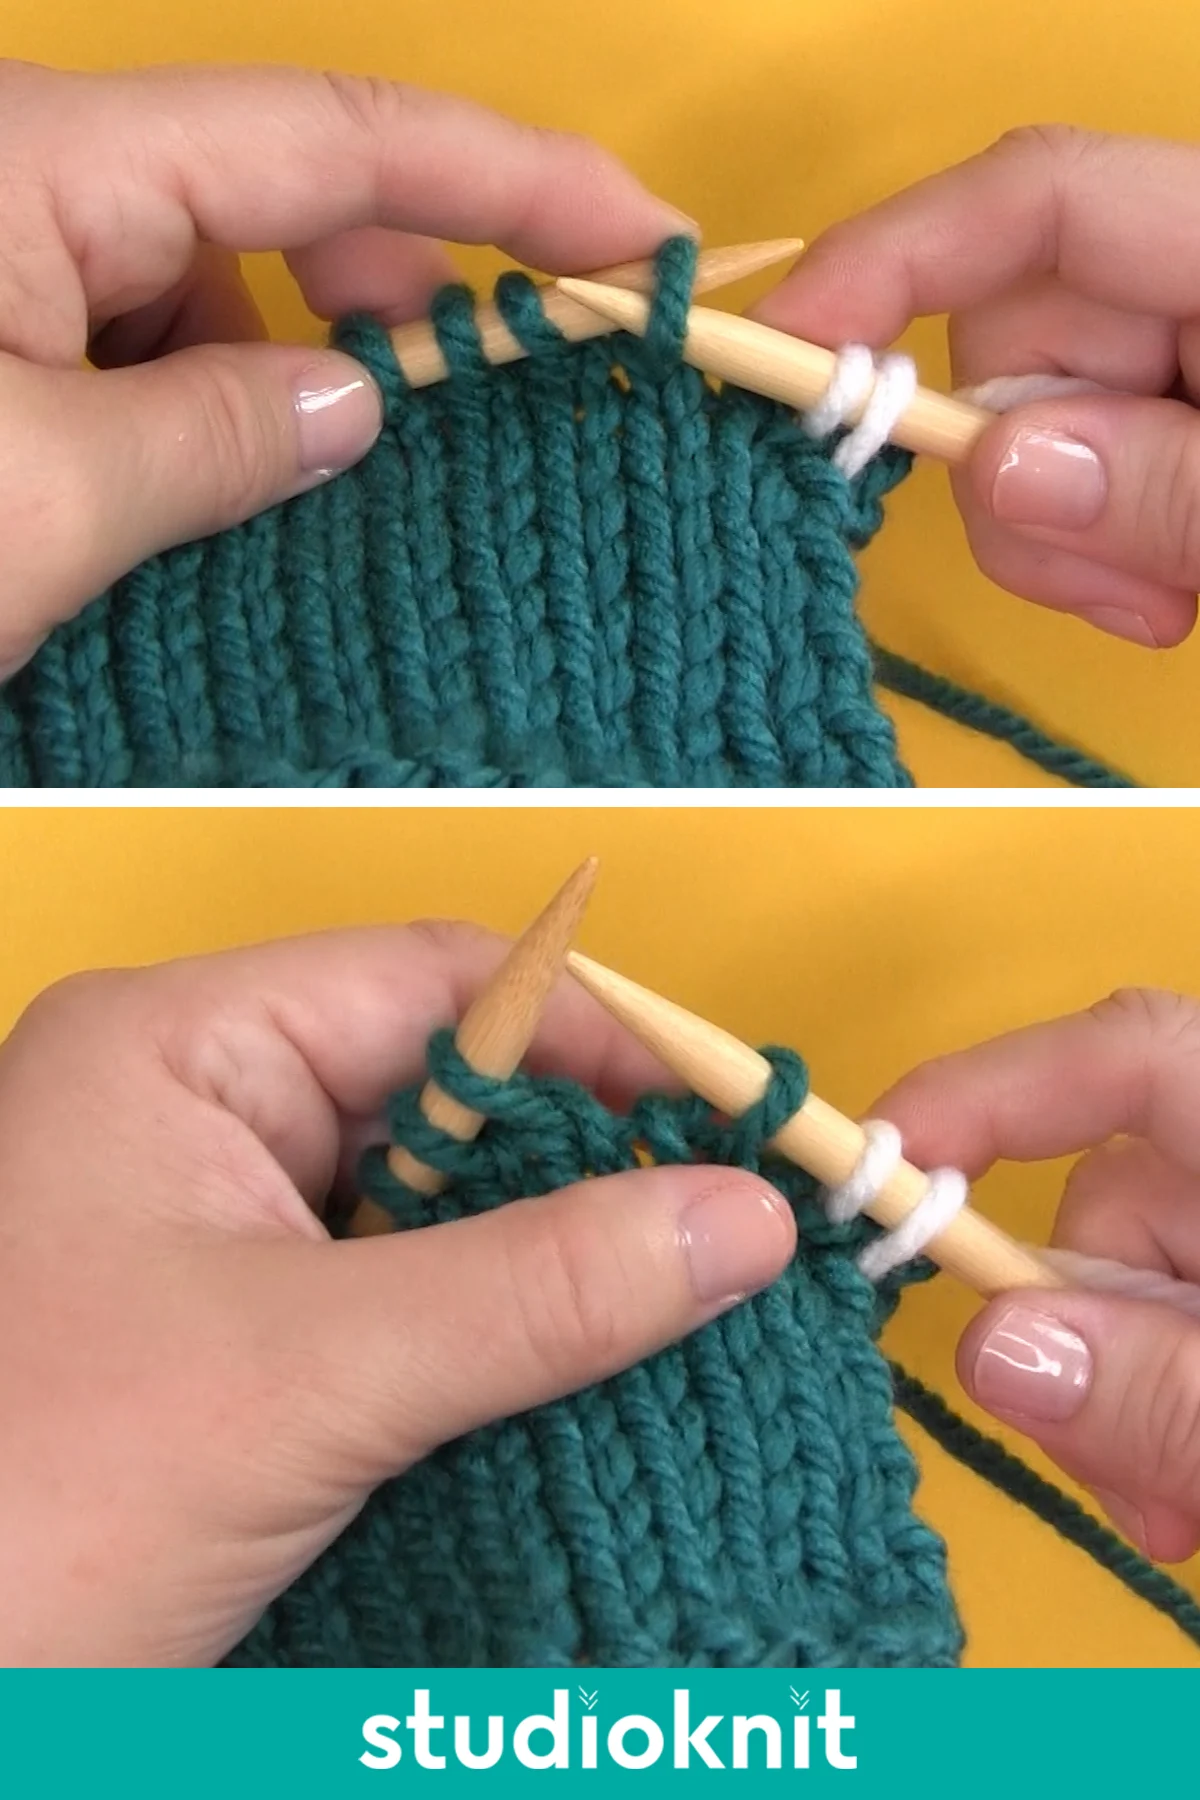 Slip Stitch Knitwise with Yarn in Back, yarn